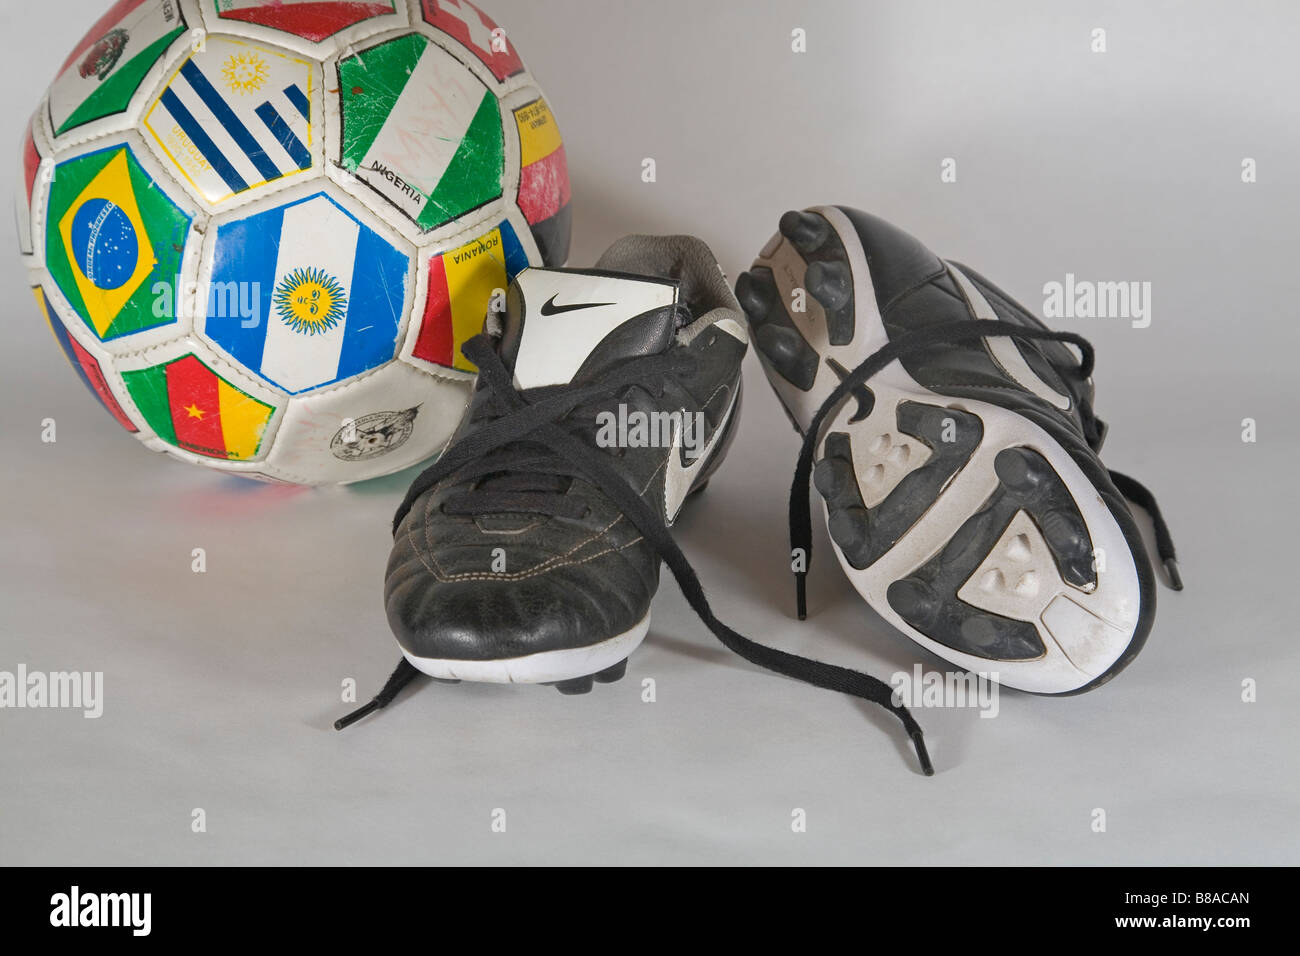 Alte verwendet Schuhe Fußball Fußballschuhe und einen gebrauchten Fußball  Stockfotografie - Alamy